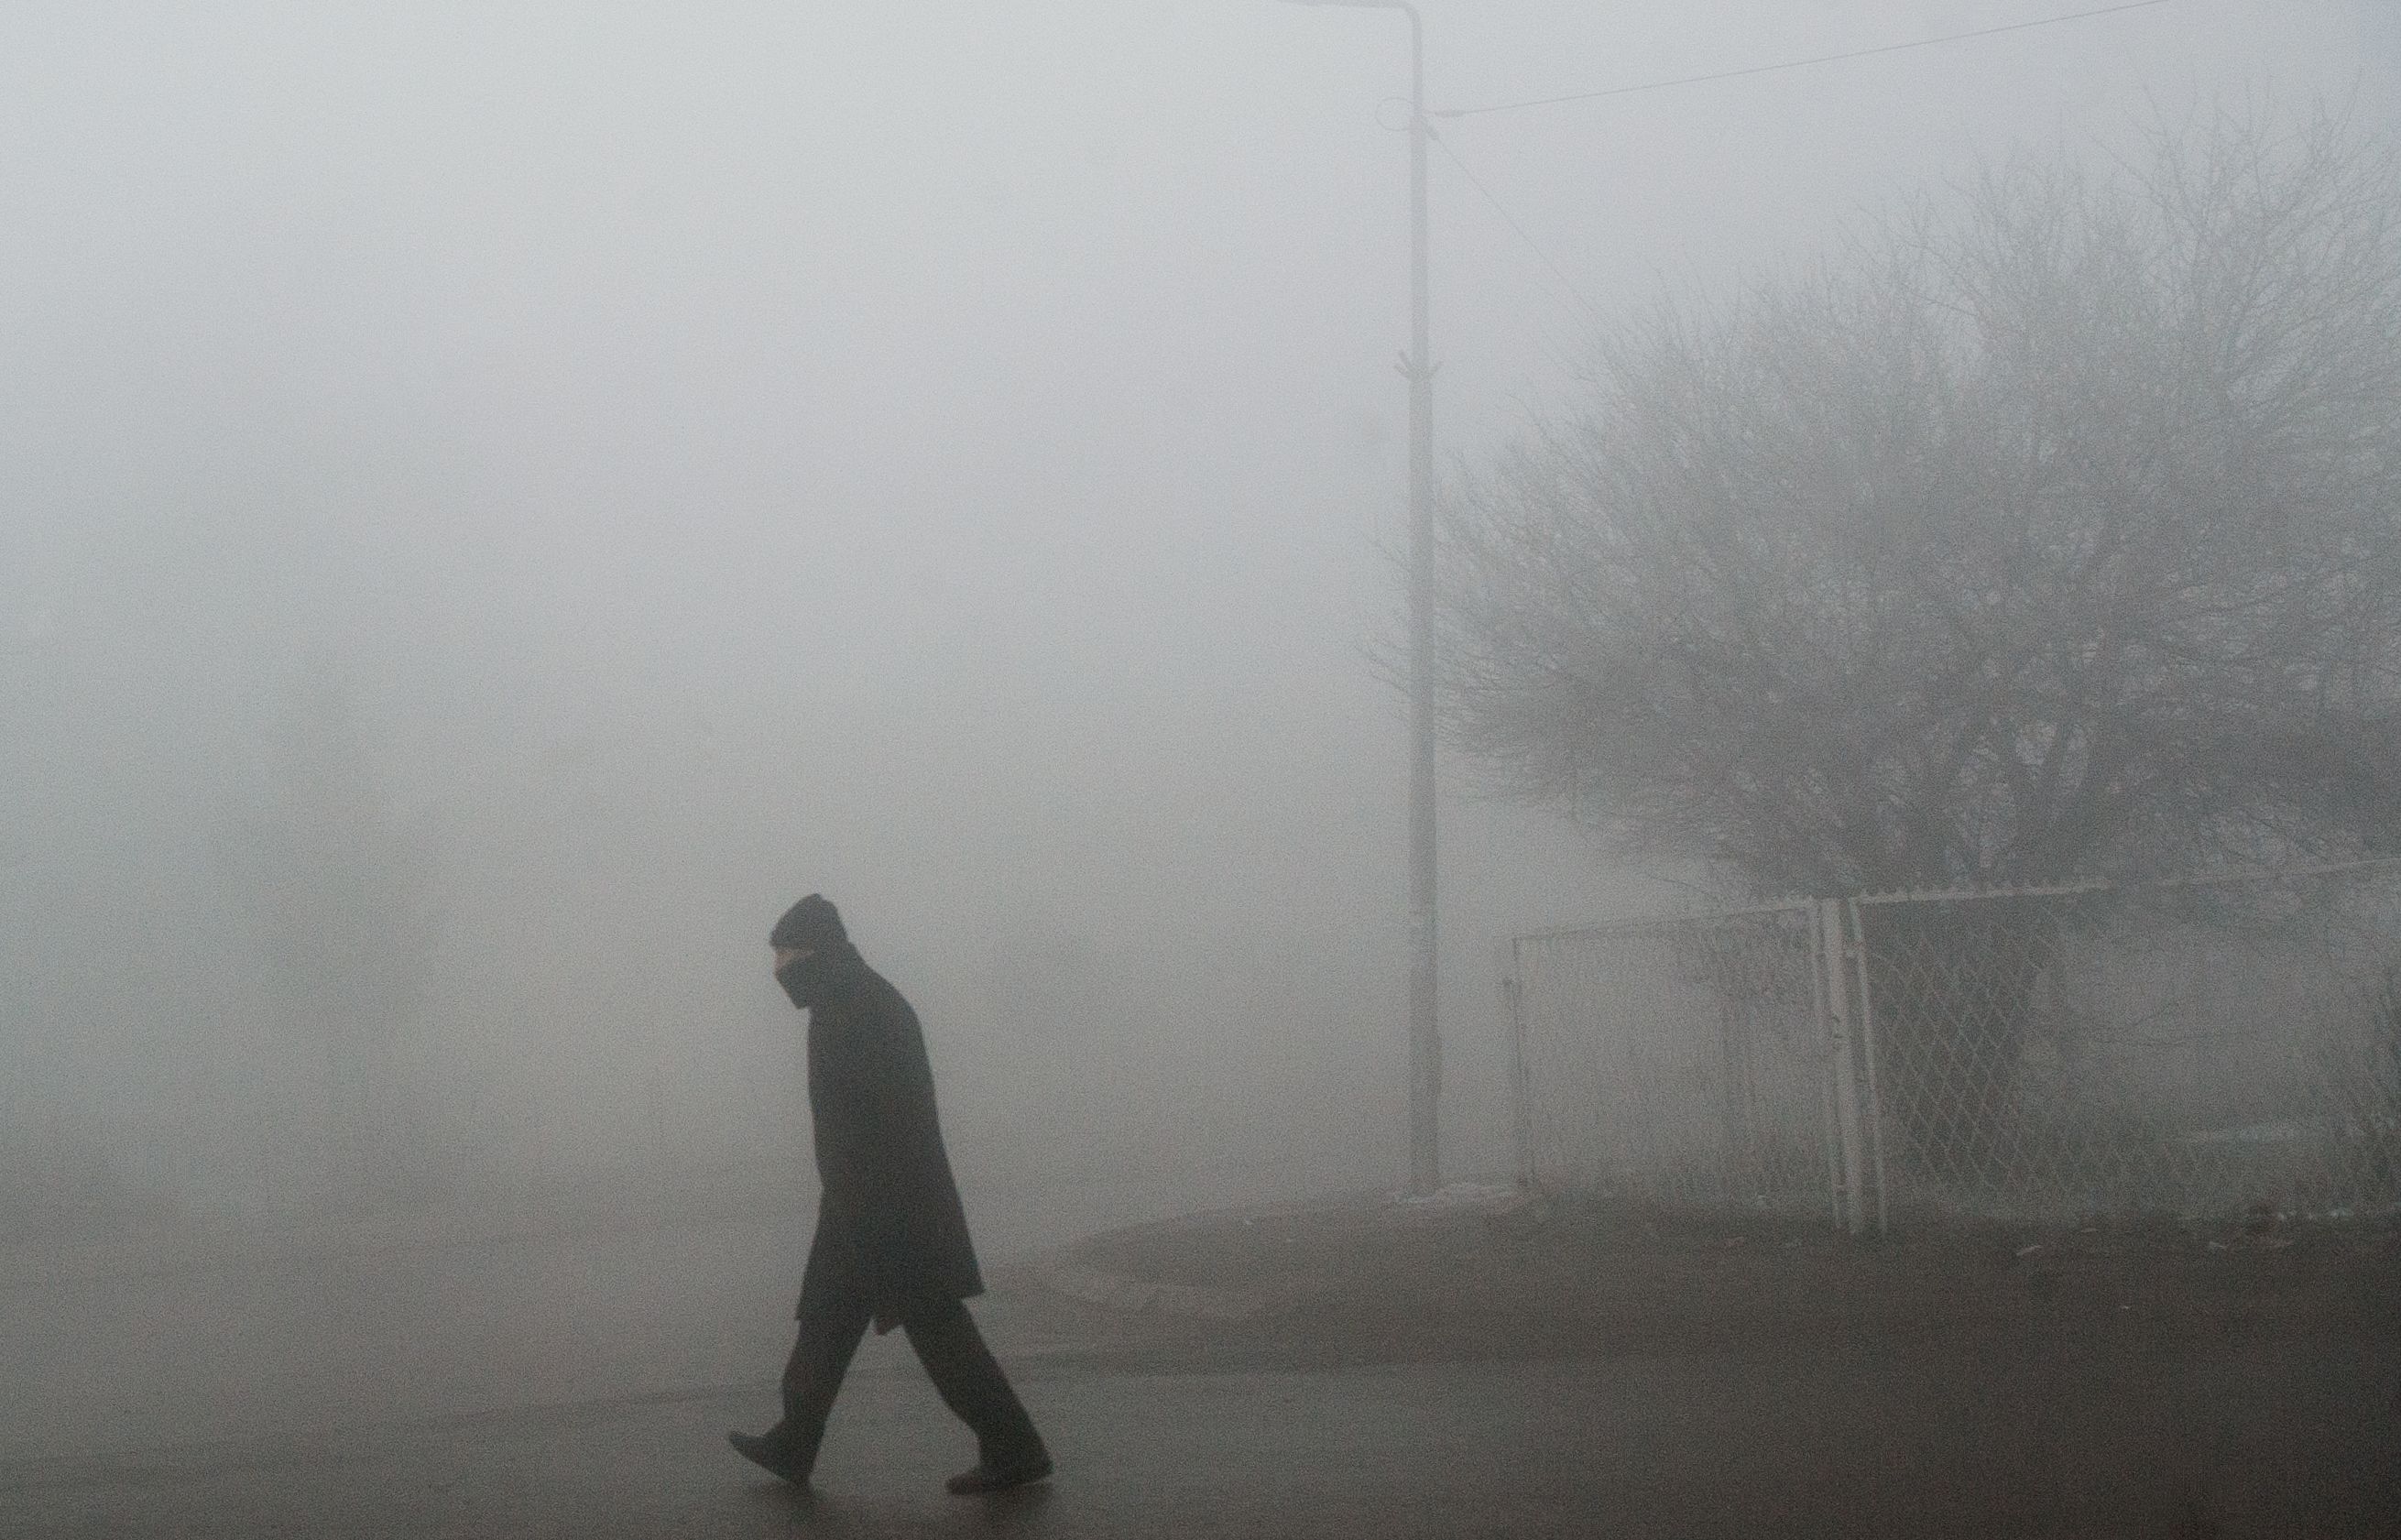 الضباب الدخانى فى كوسوفو نتيجة للتلوث